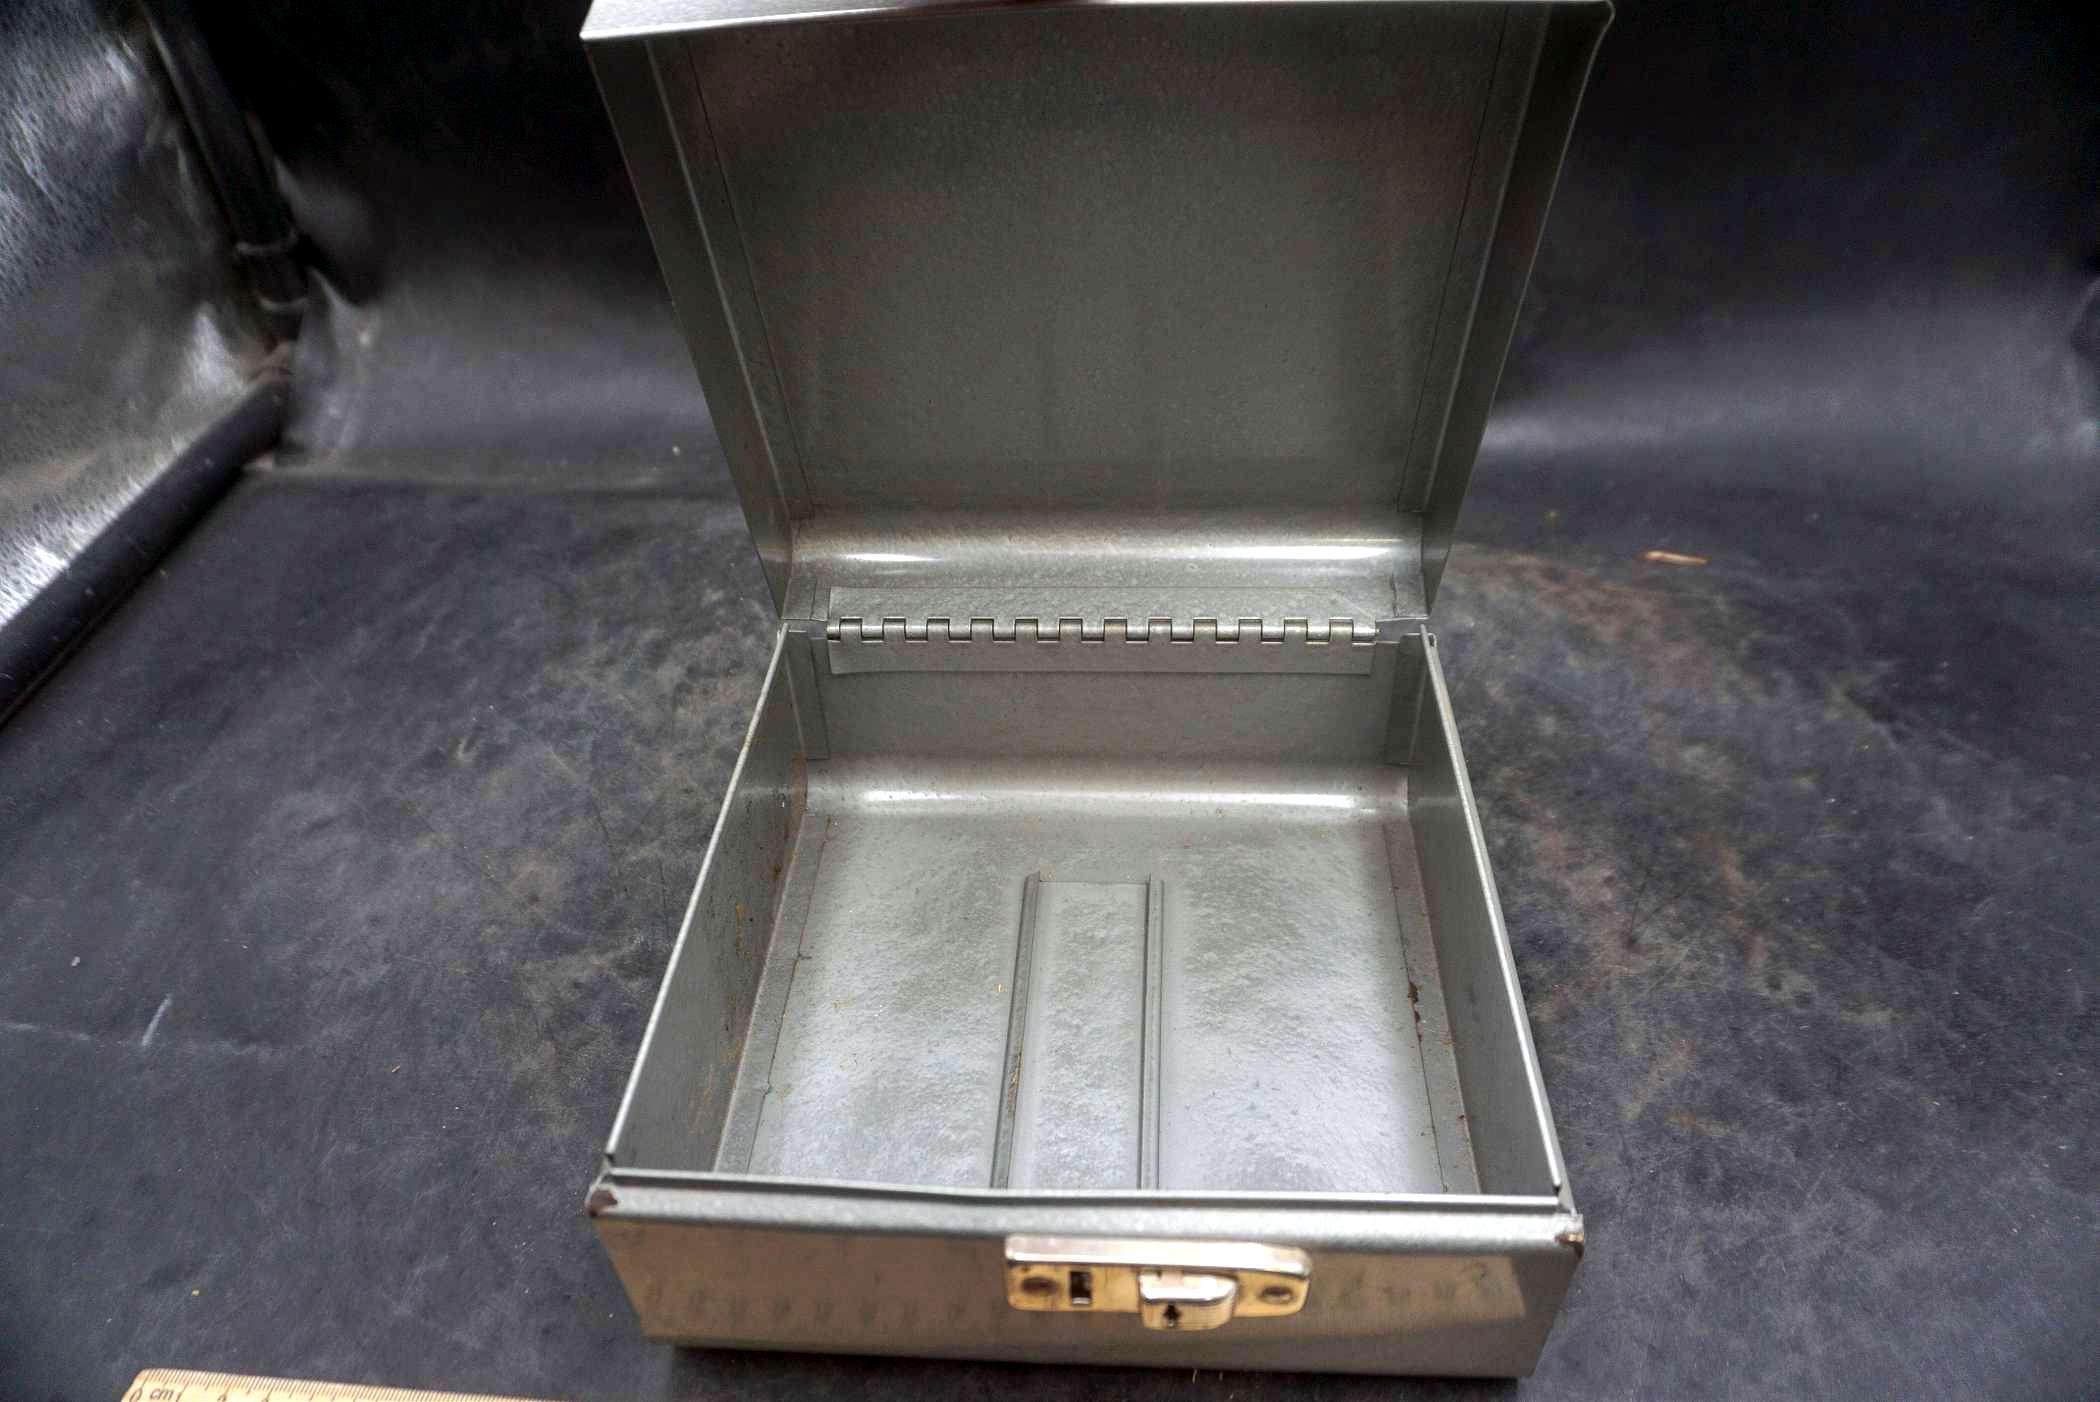 Metal Small Lockable Box